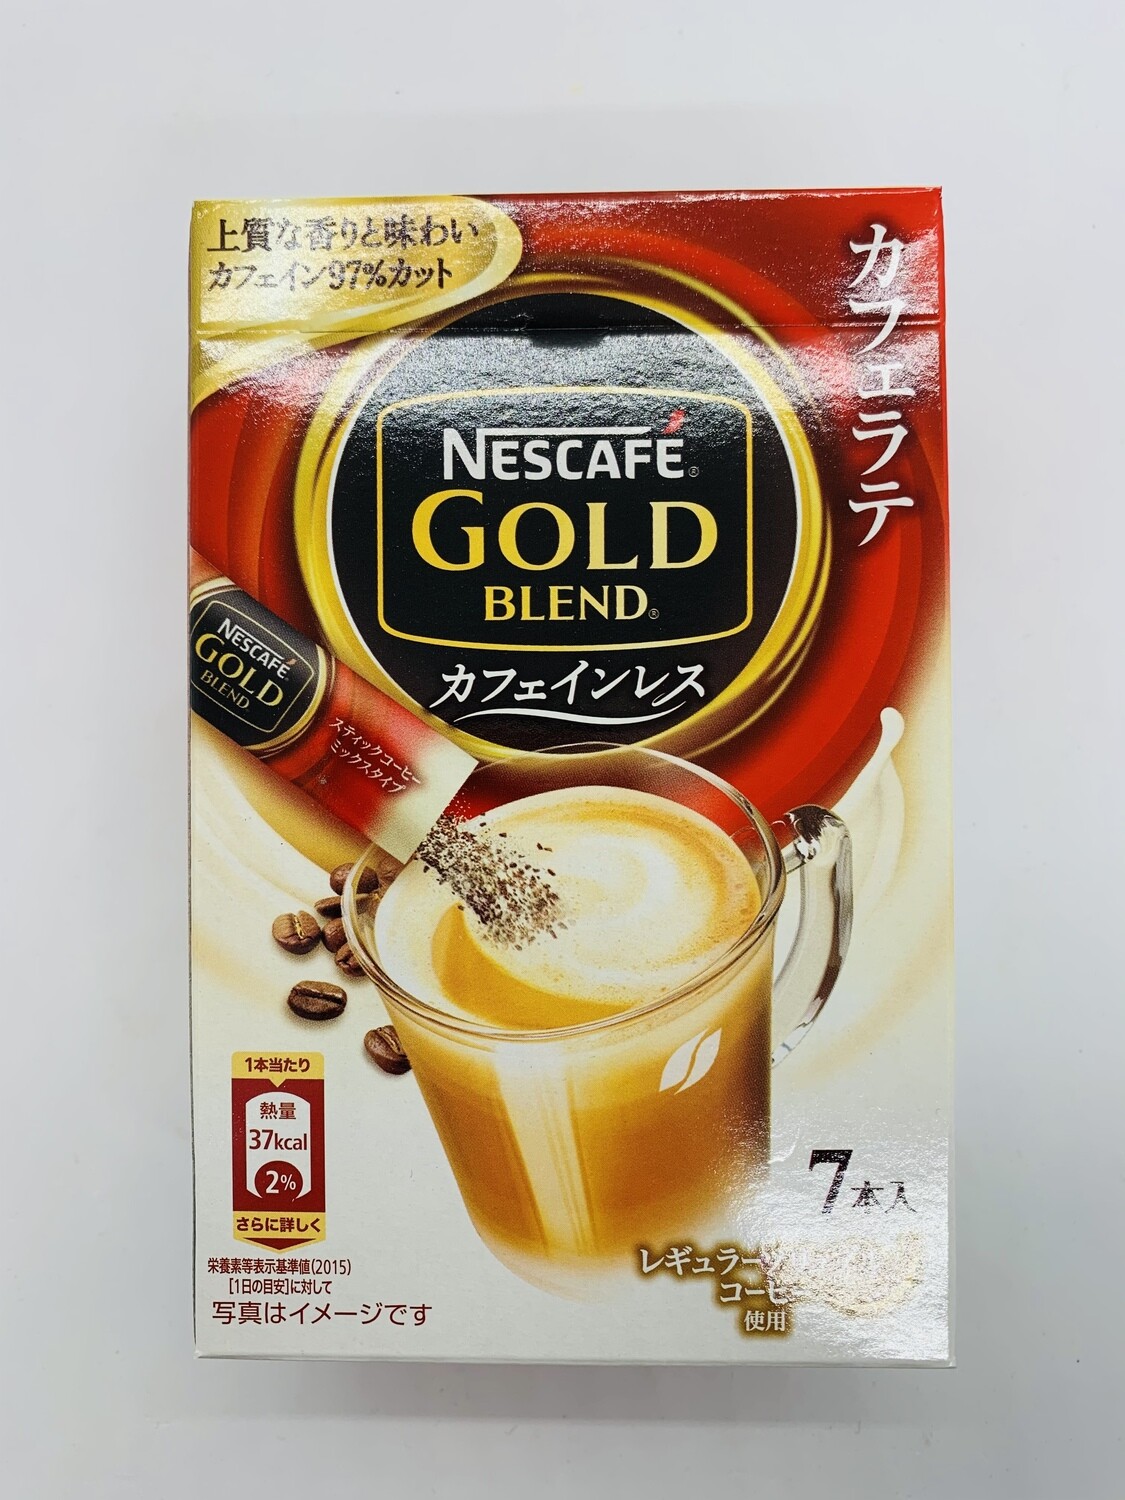 Gold Blend Less Caffeine